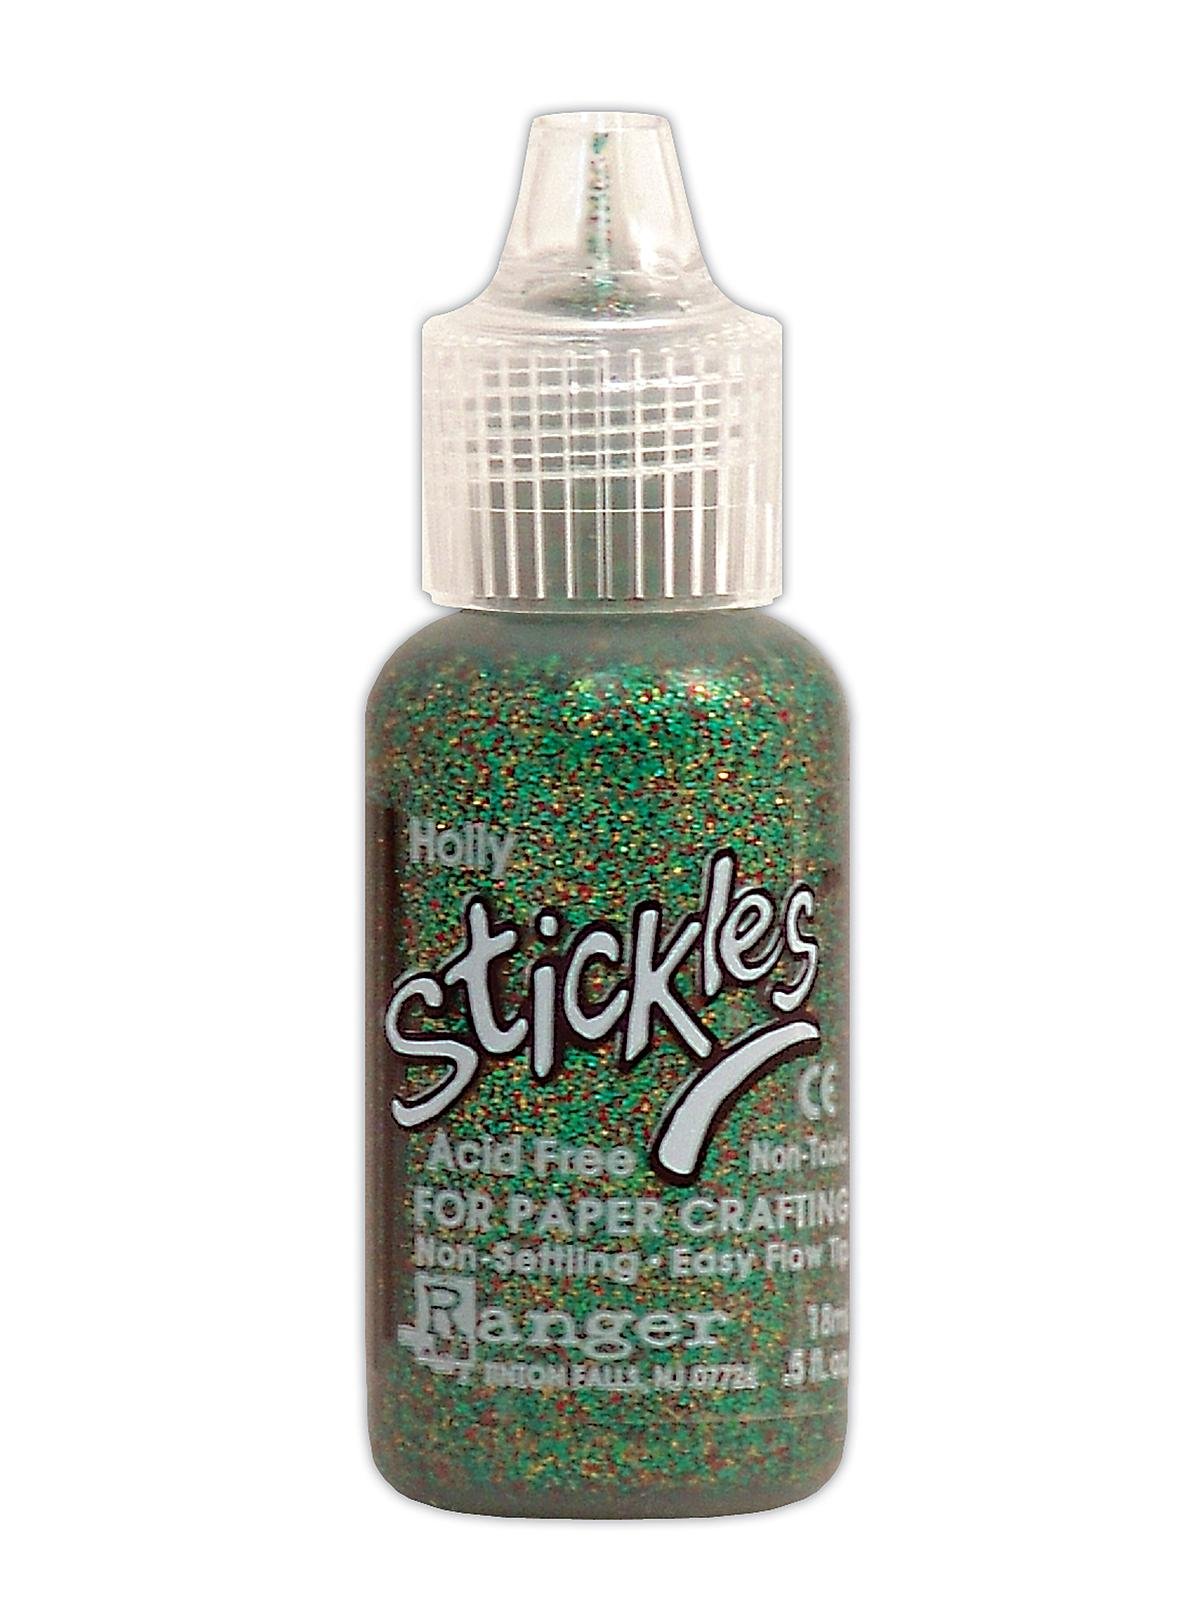 Ranger Stickles Glitter Glue - 18ml Bottle - Any 1 Colour